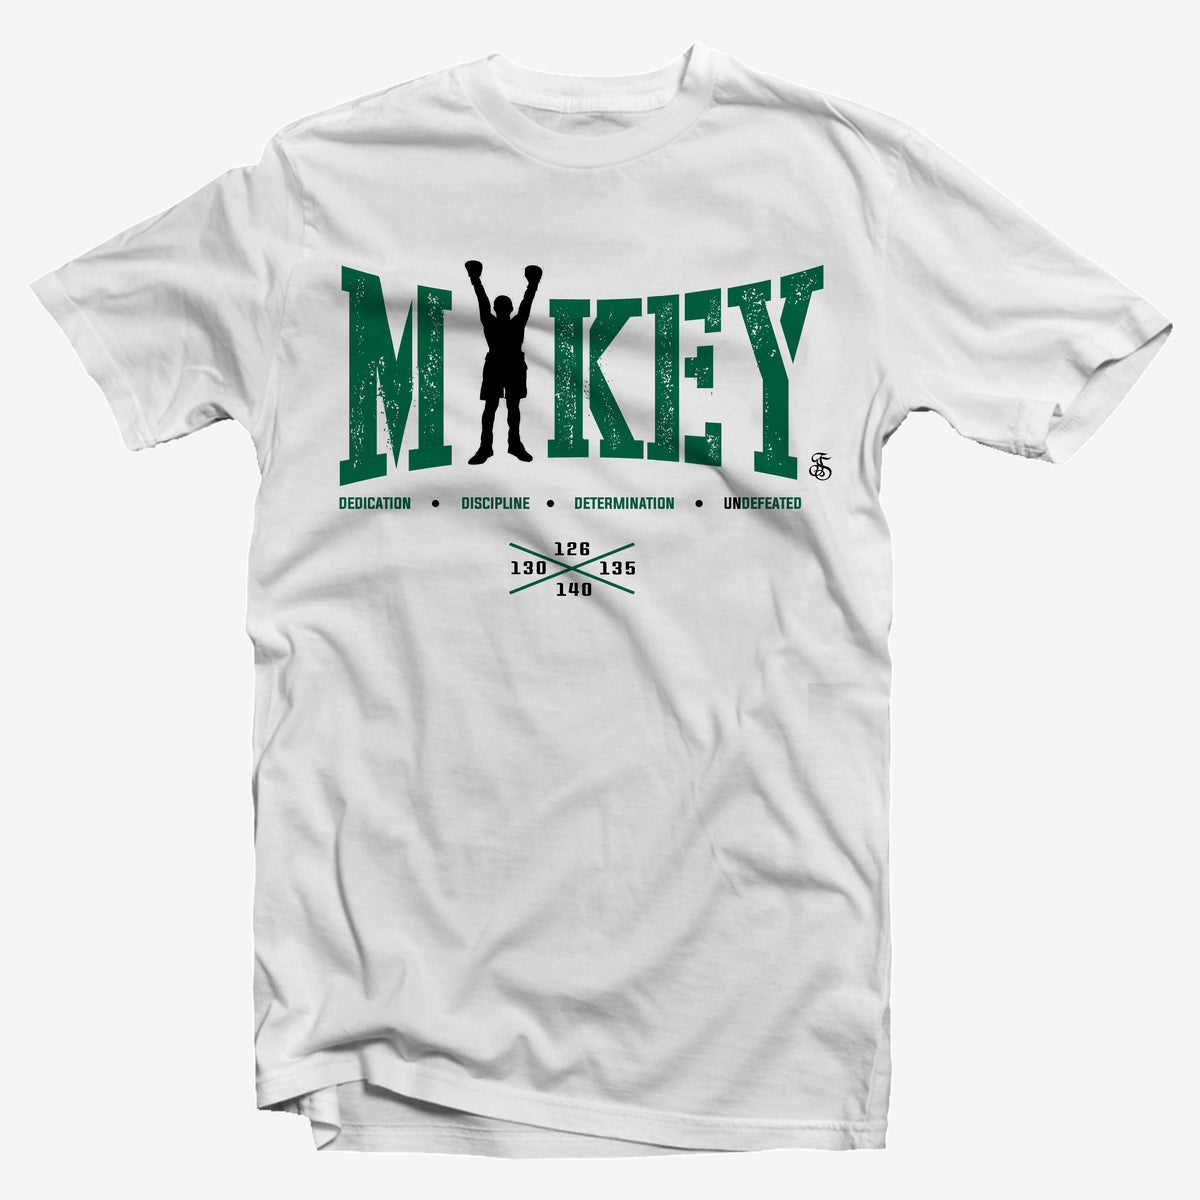 mikey garcia t shirts